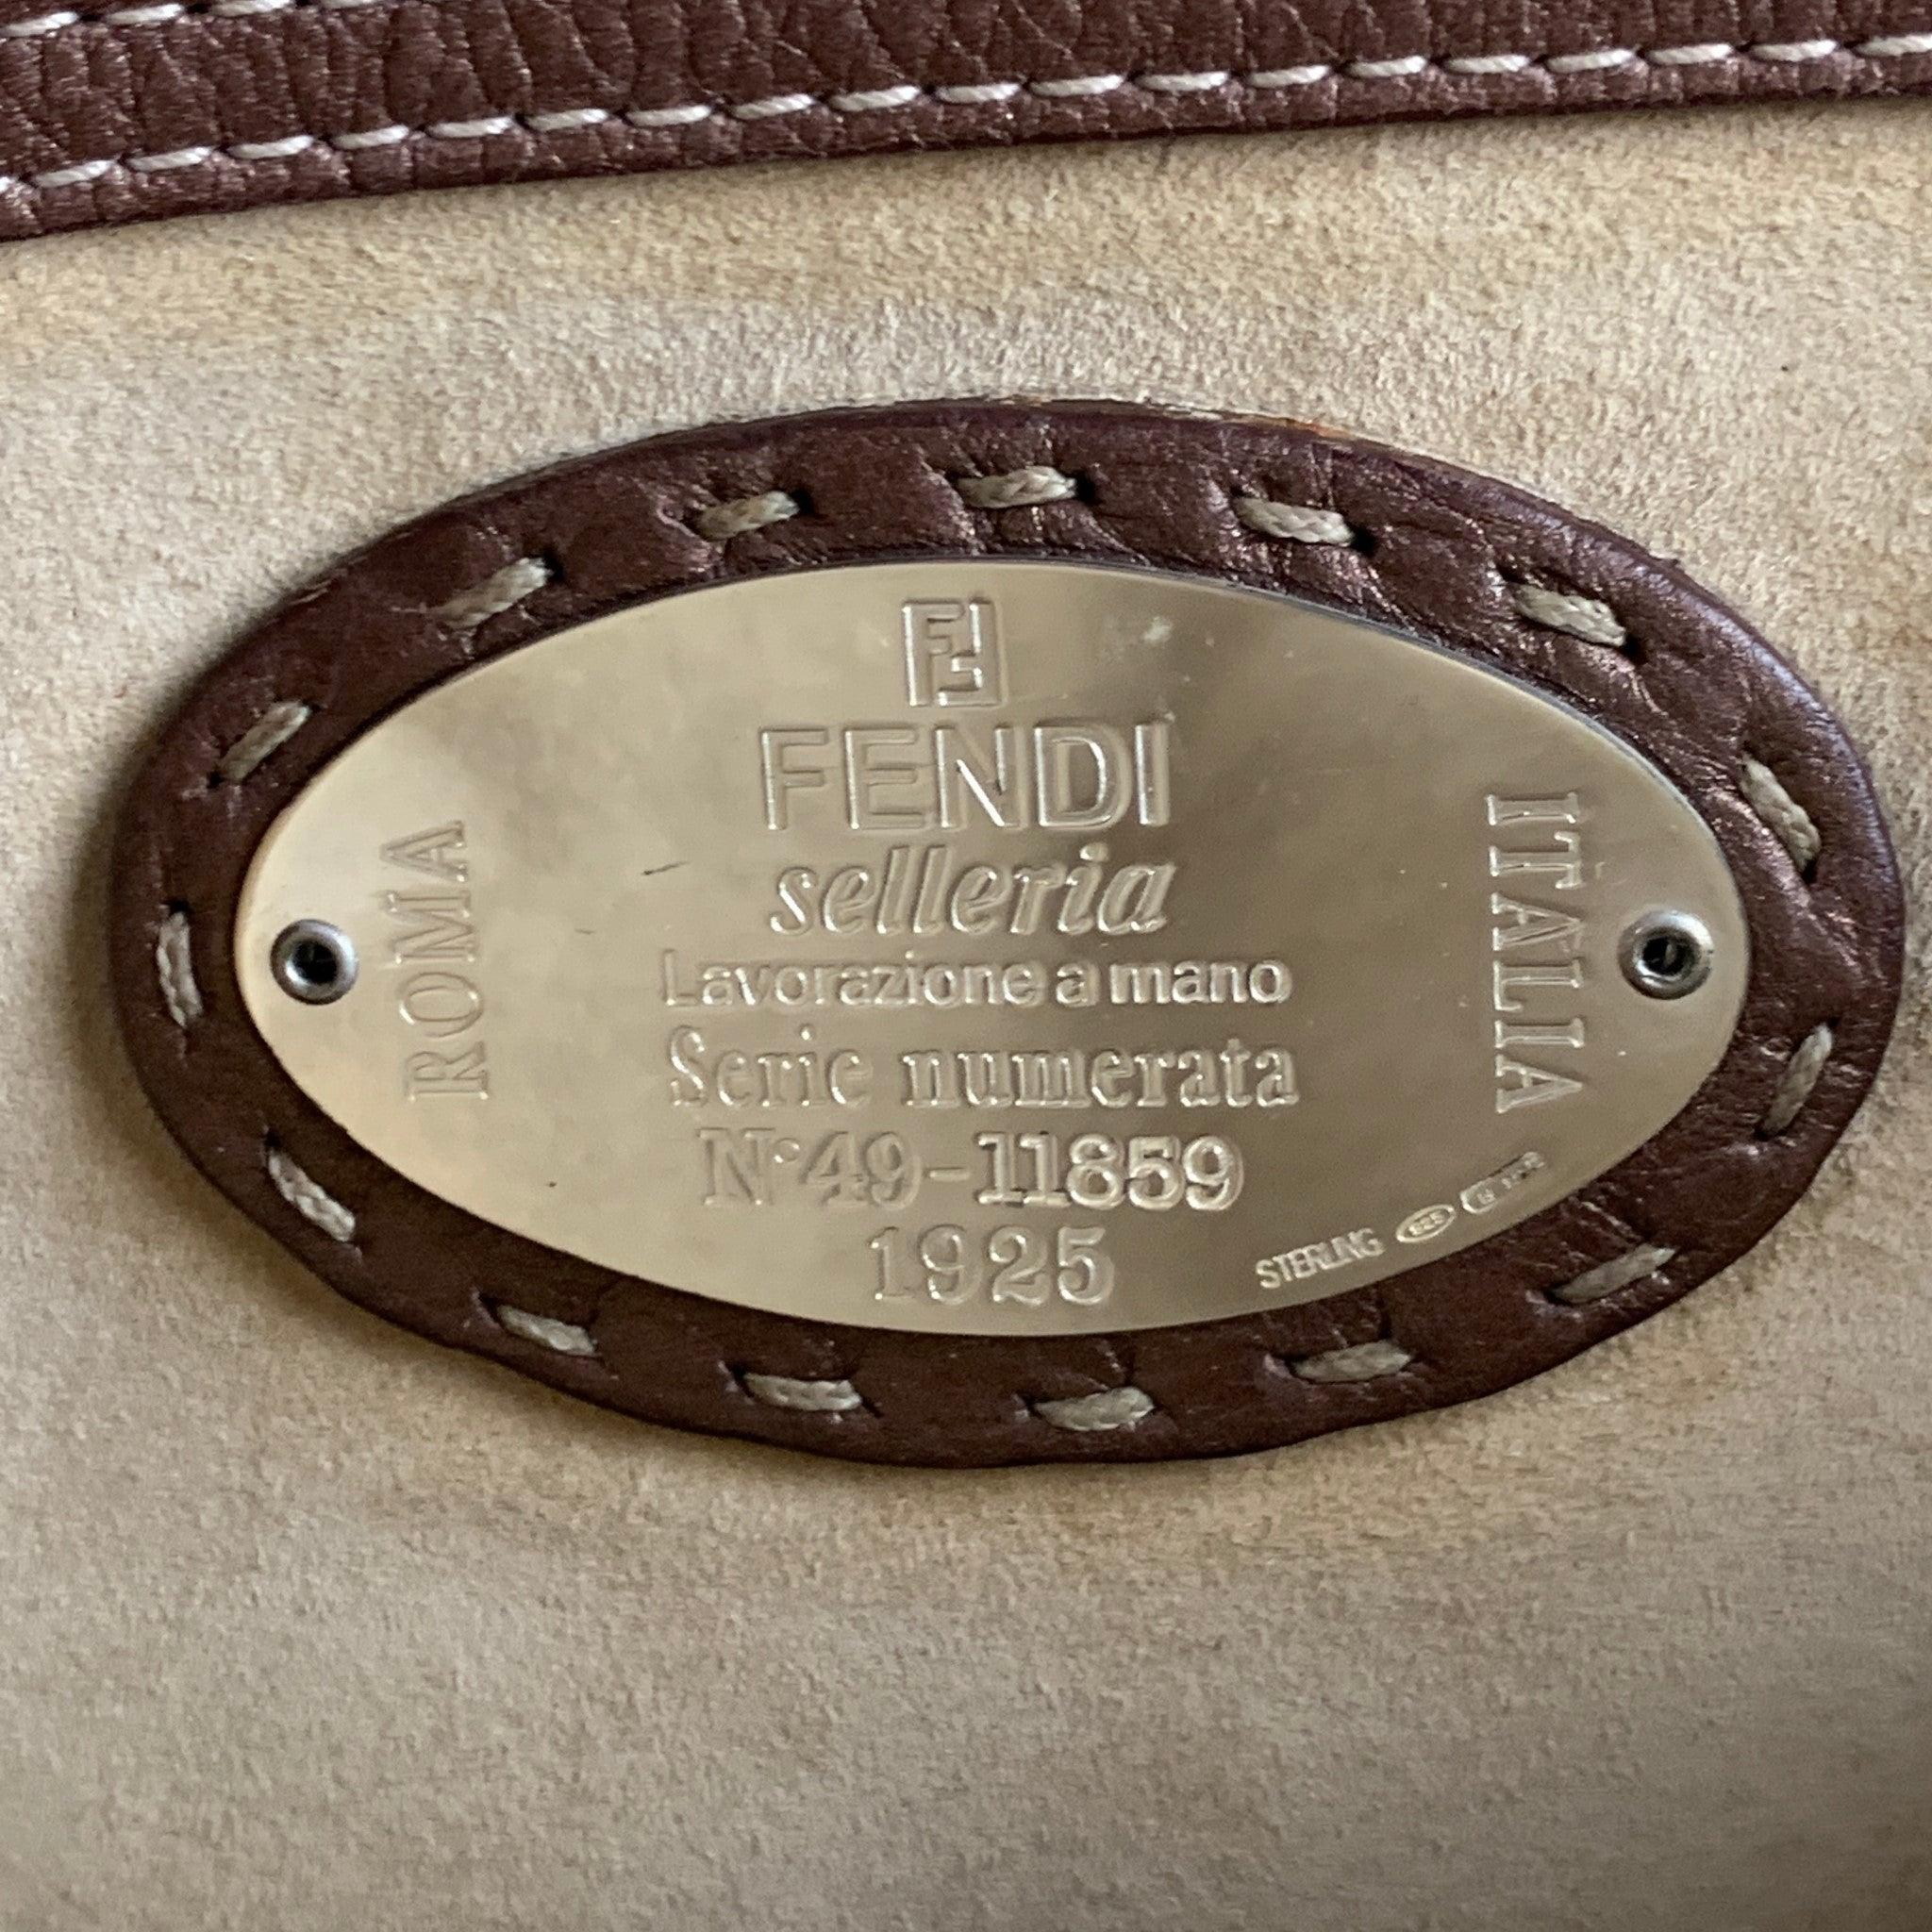 FENDI SELLERIA N49-11859 Copper Contrast Stitch Pebble Grain Leather Handbag For Sale 2